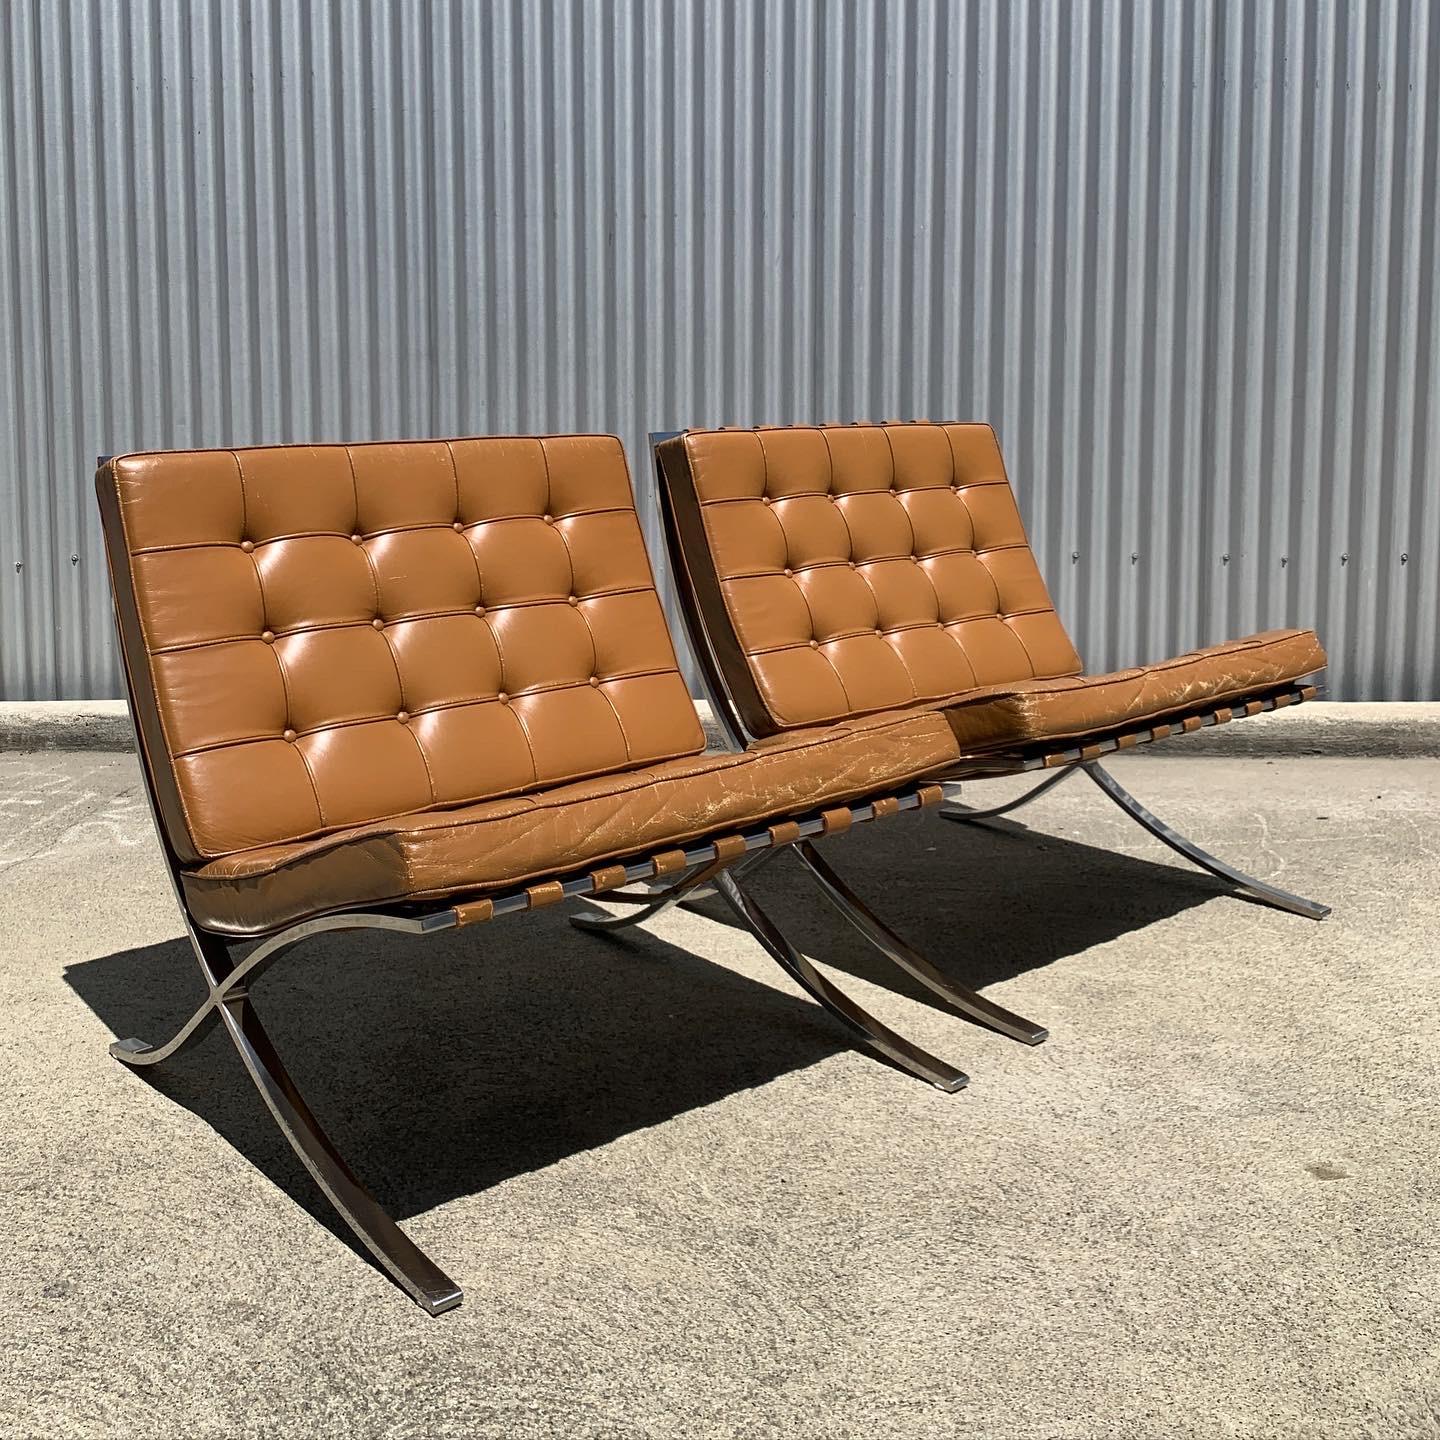 Diese Barcelona-Stühle wurden 1929 von Mies van der Rohe entworfen und in den 1970er Jahren von Knoll International hergestellt.

Die Stühle sind mit einem unglaublichen, handgefärbten cognacfarbenen Lederbezug auf einem Chromstahlgestell